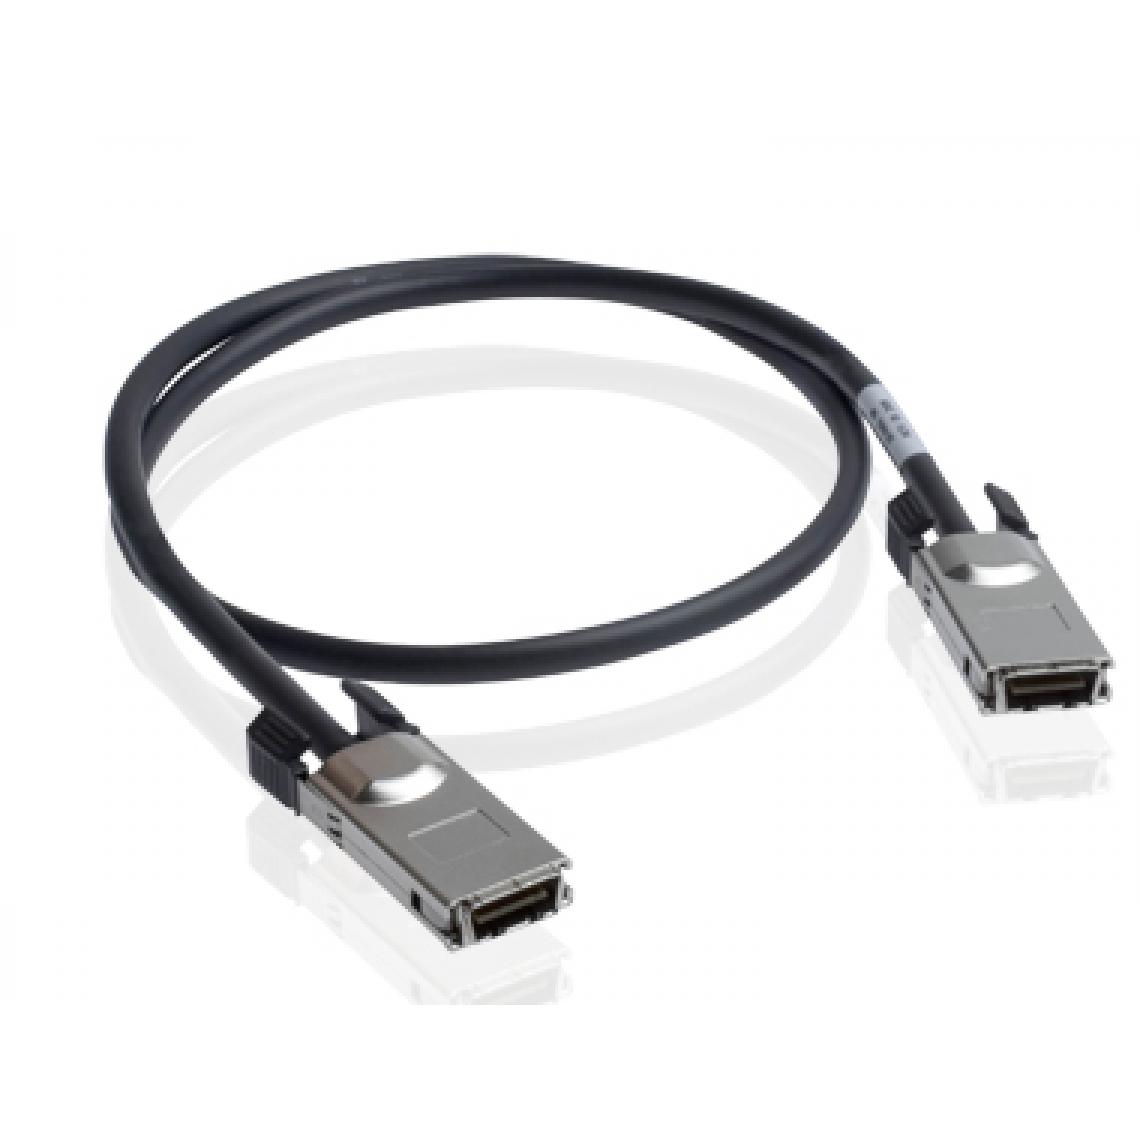 Dlink - Cable d empilage 300 cm Cable d empilage 300 cm pour DGS-3120 - Coffrets de communication